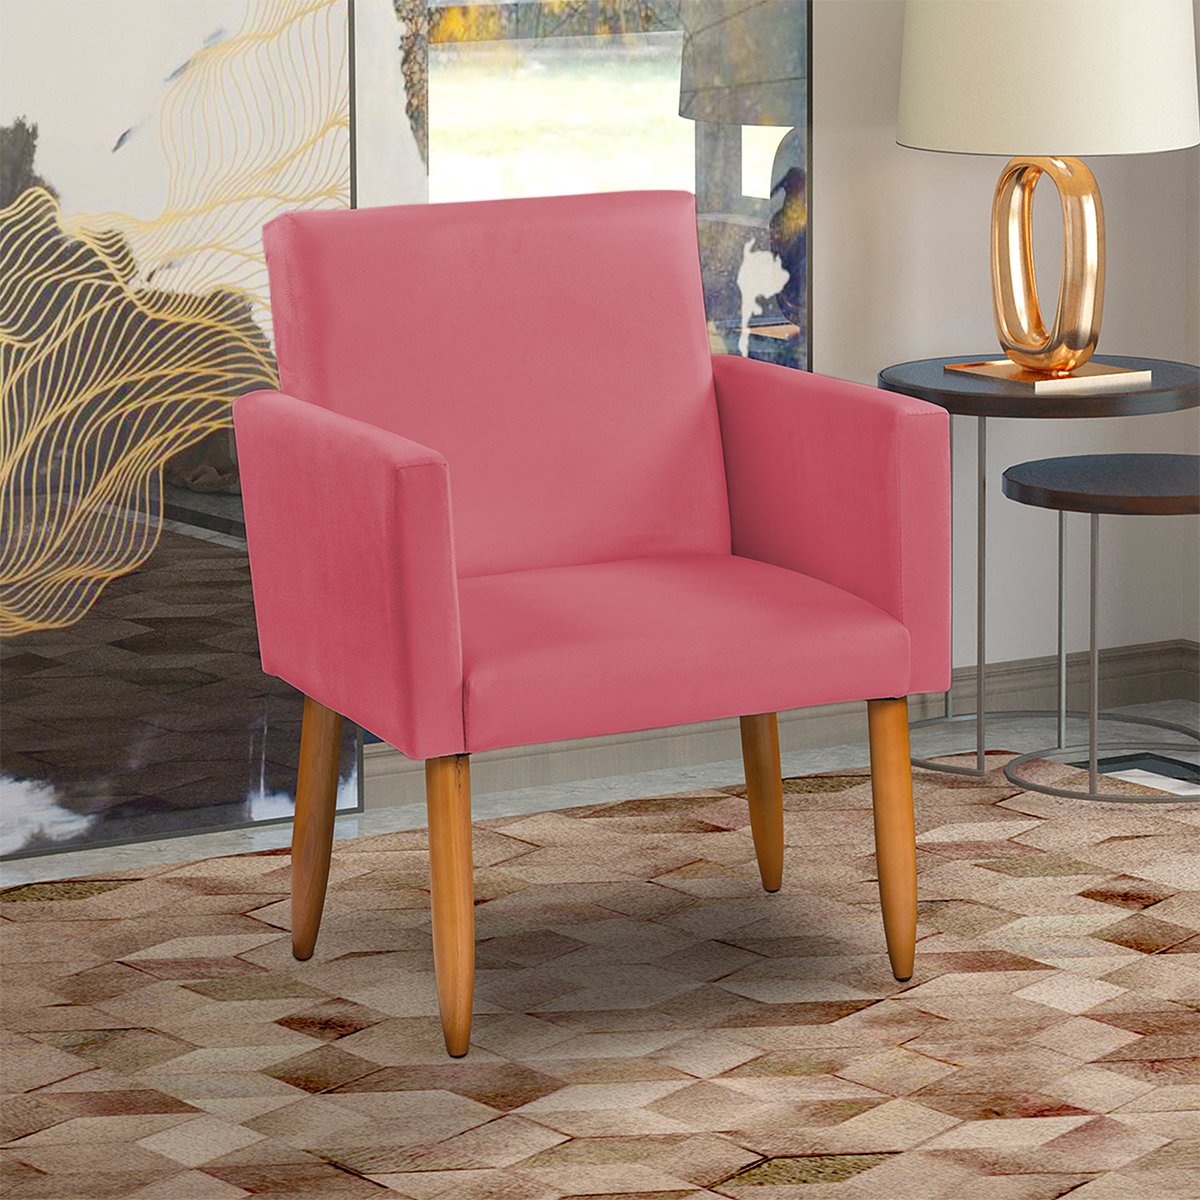 Poltrona Decorativa Cadeira Reforçada Para Sala E Recepção Escritório Suede Rosê Pé Castanho